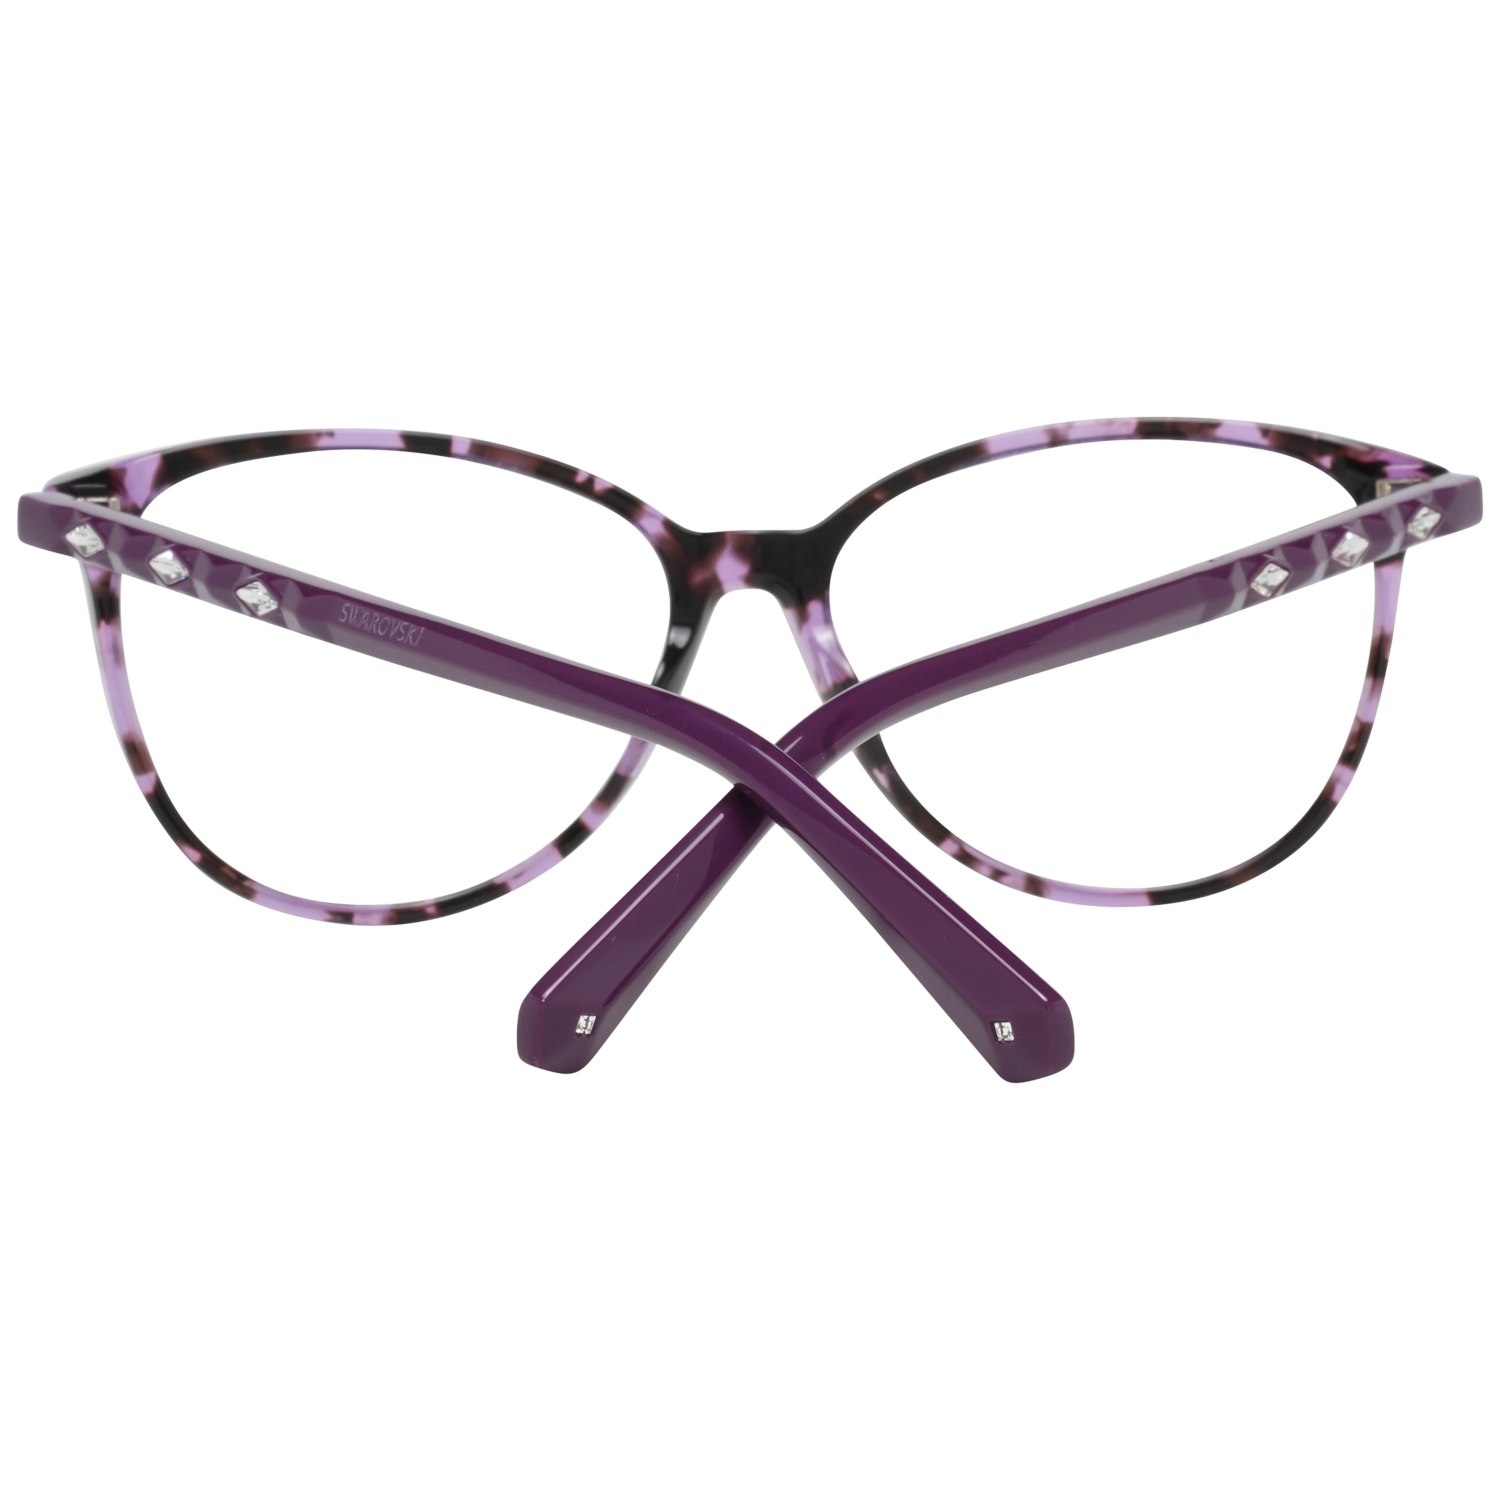 Swarovski Frames Swarovski Women Glasses Optical Frame SK5301 055 54 Eyeglasses Eyewear UK USA Australia 